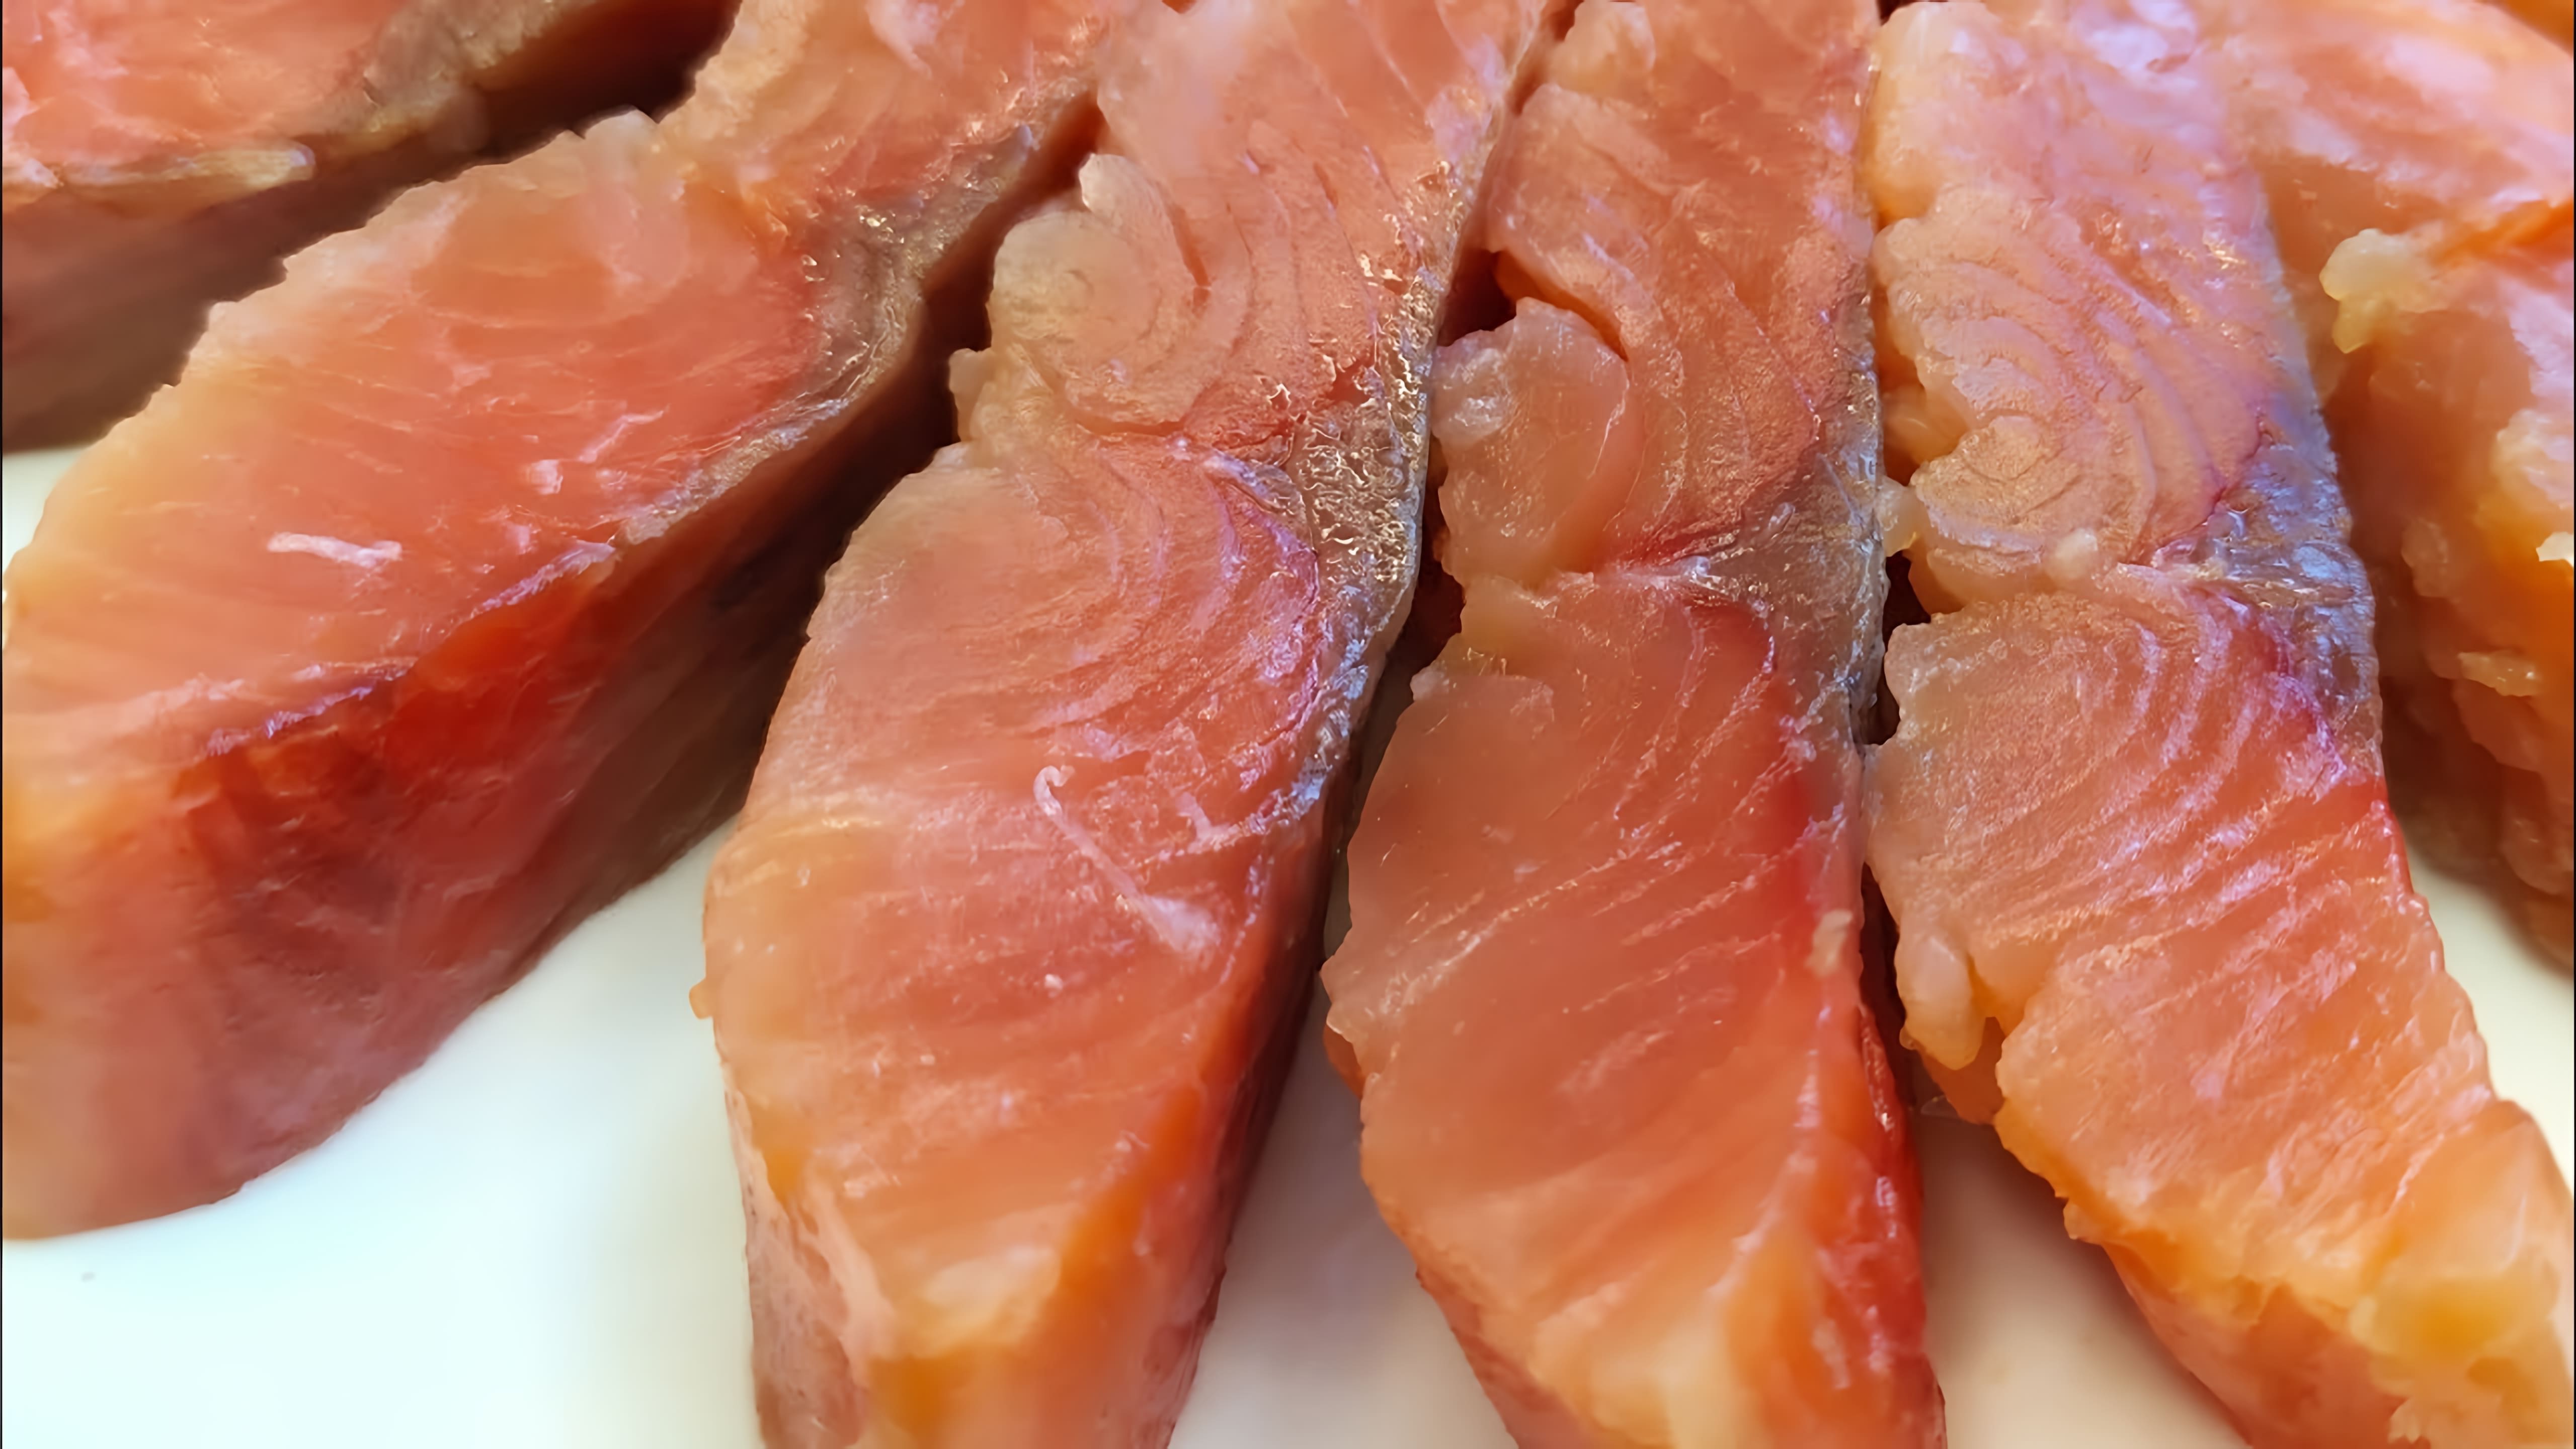 Видео рецепт посола розового лосося дома простым и проверенным способом